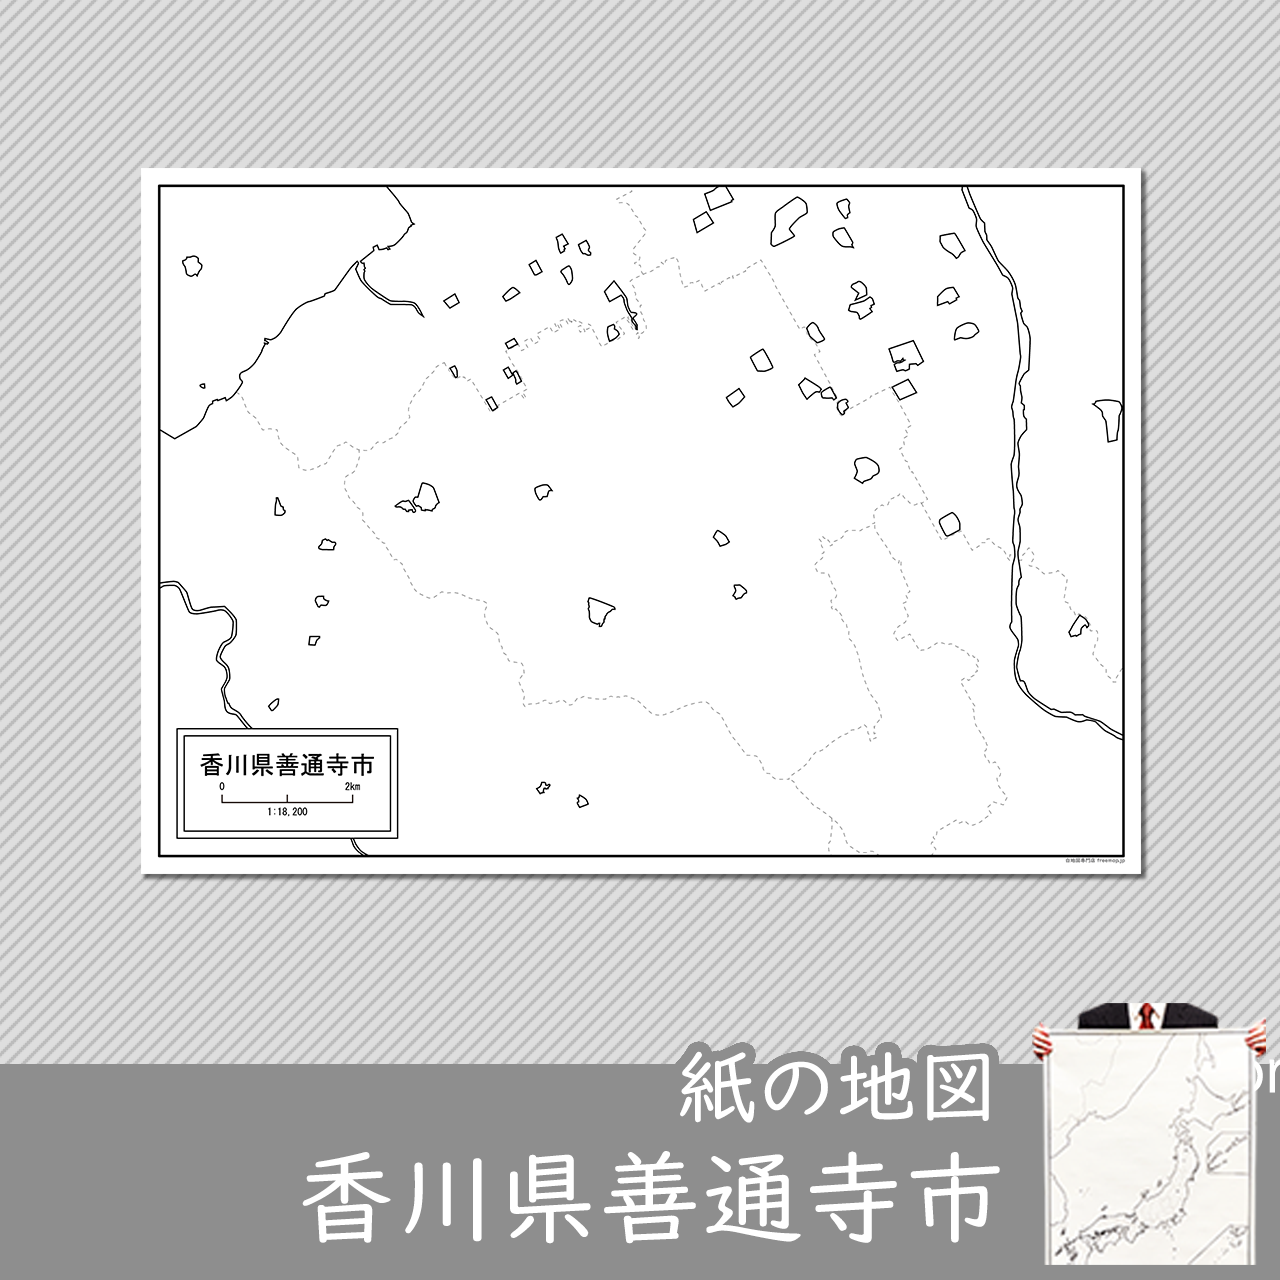 善通寺市の紙の白地図のサムネイル